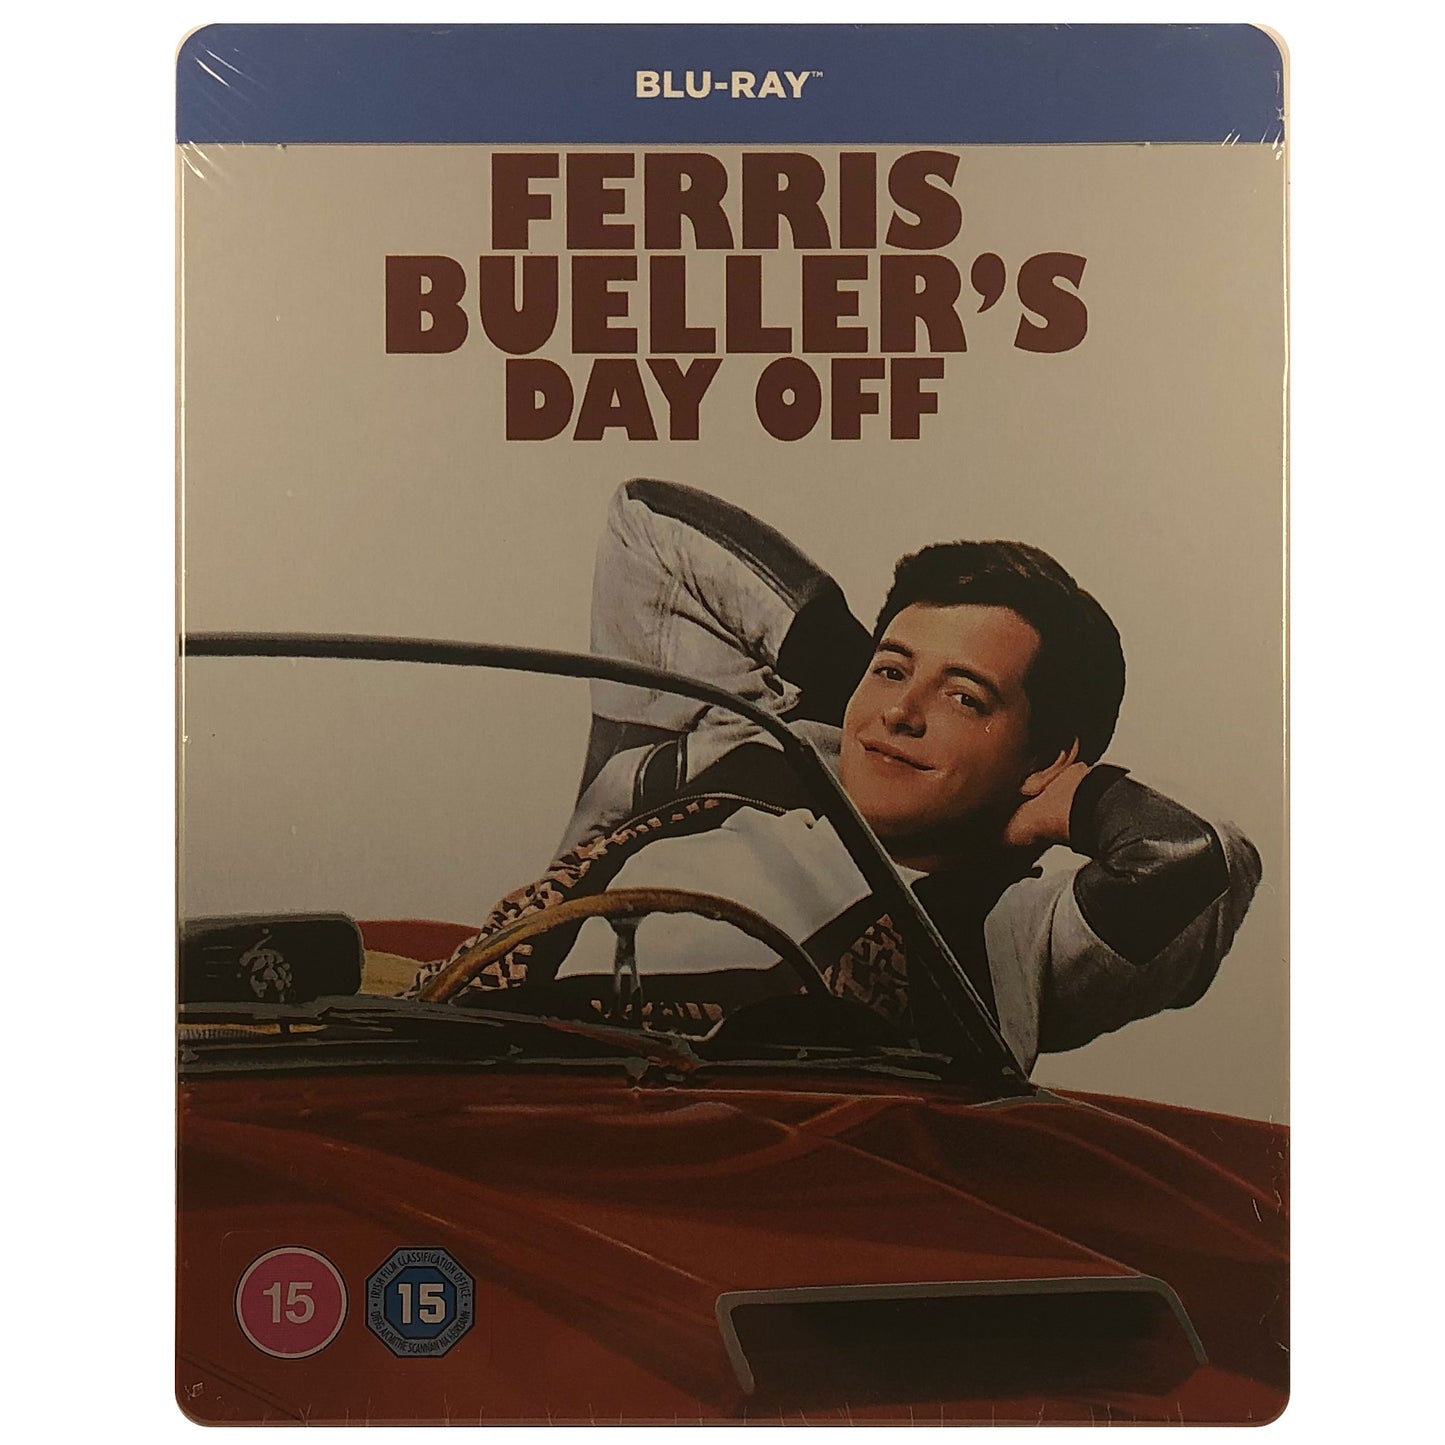 Ferris Bueller's Day Off Blu-Ray Steelbook